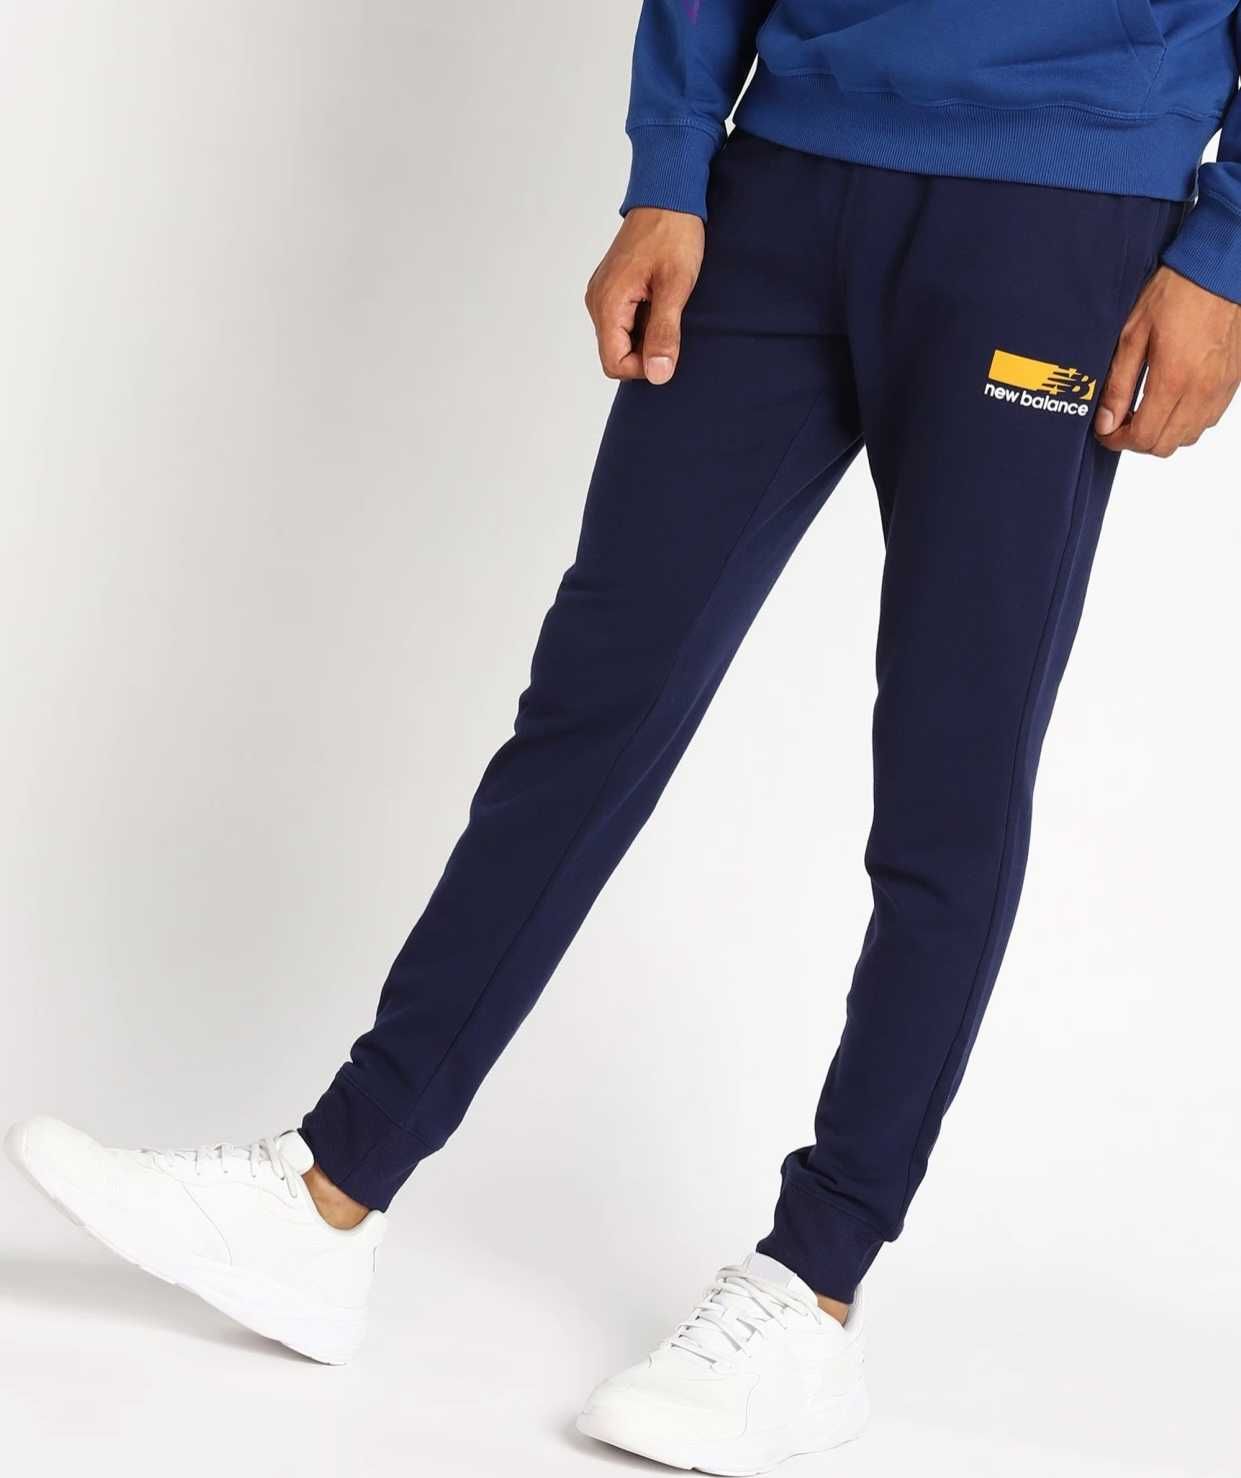 Спортивные штаны New Balance. Размер L. Оригинал